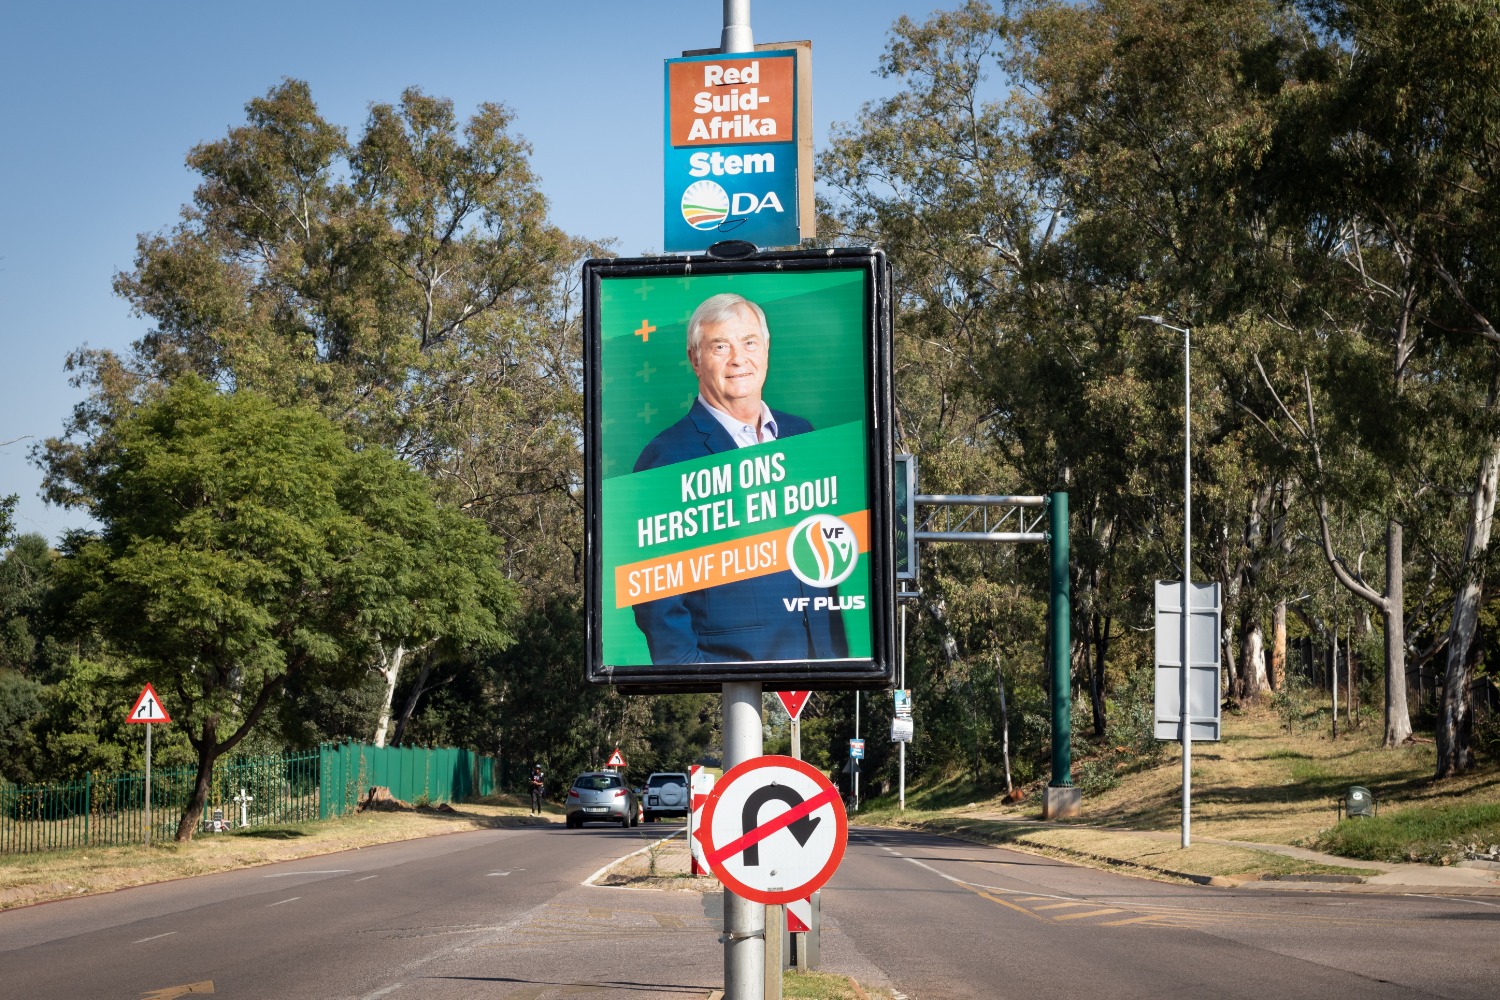 Белые политики вернулись к власти в ЮАР впервые после падения режима апартеида